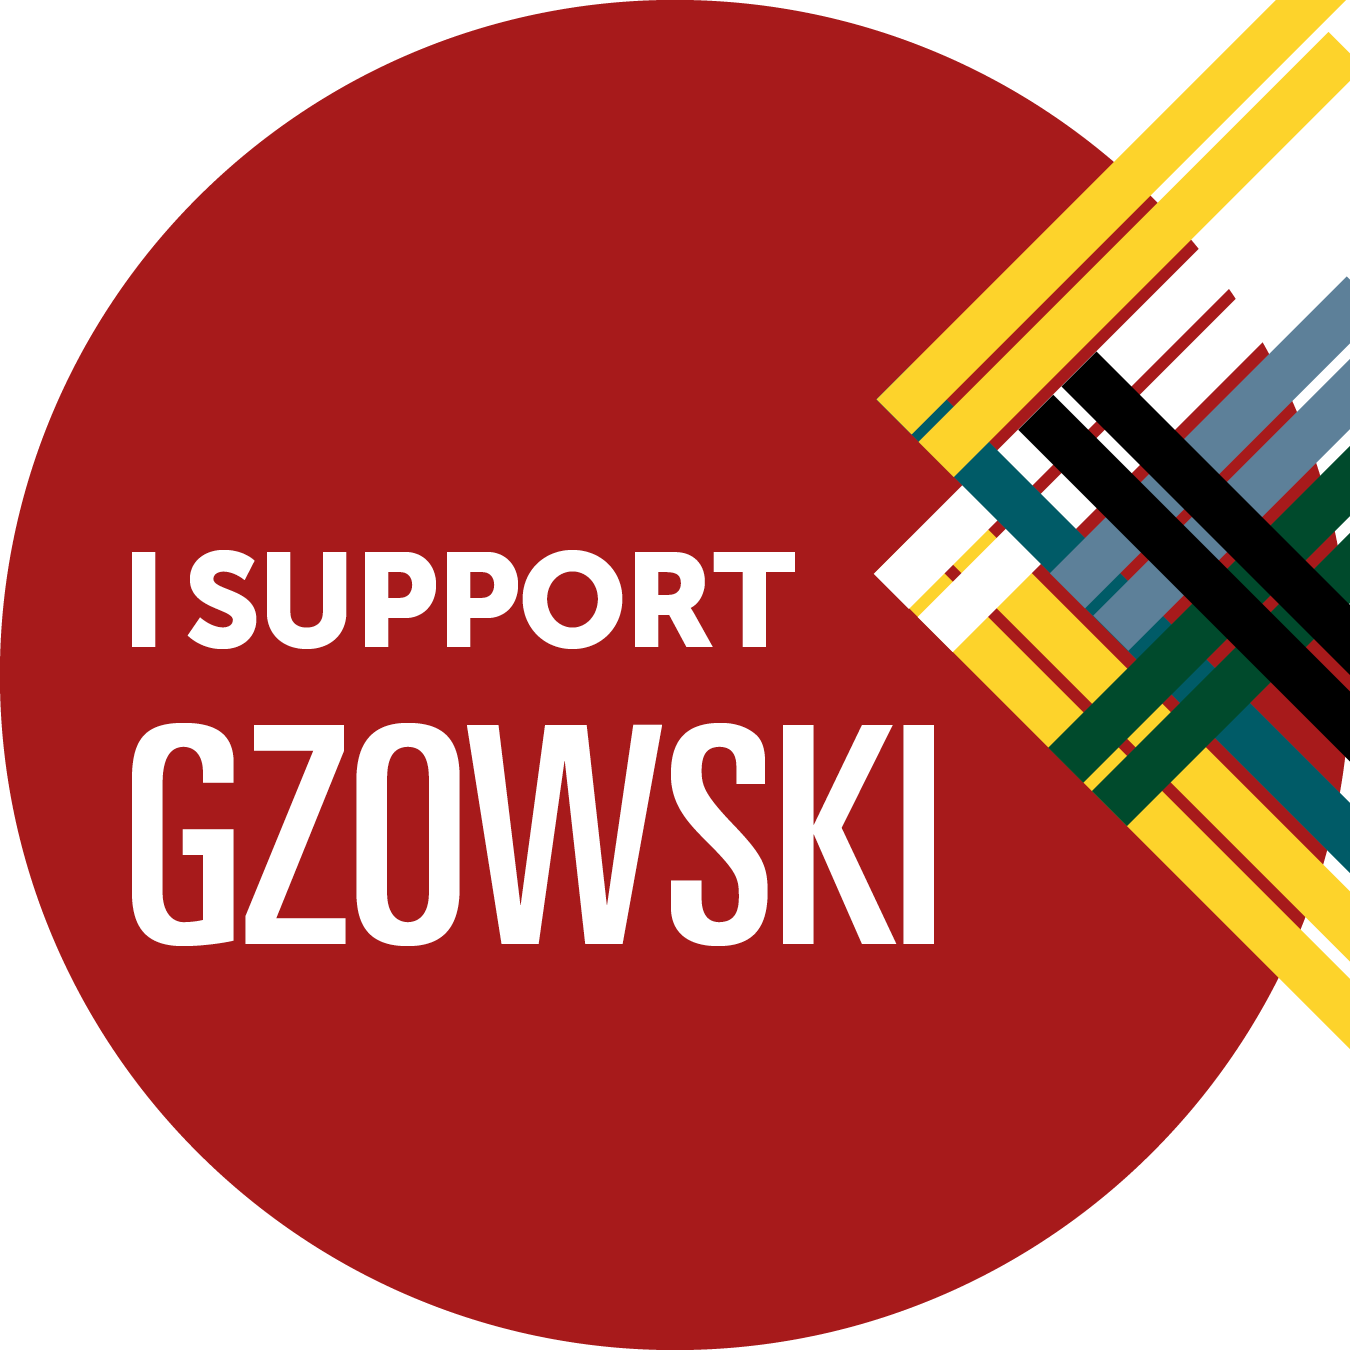 I support Gzowski